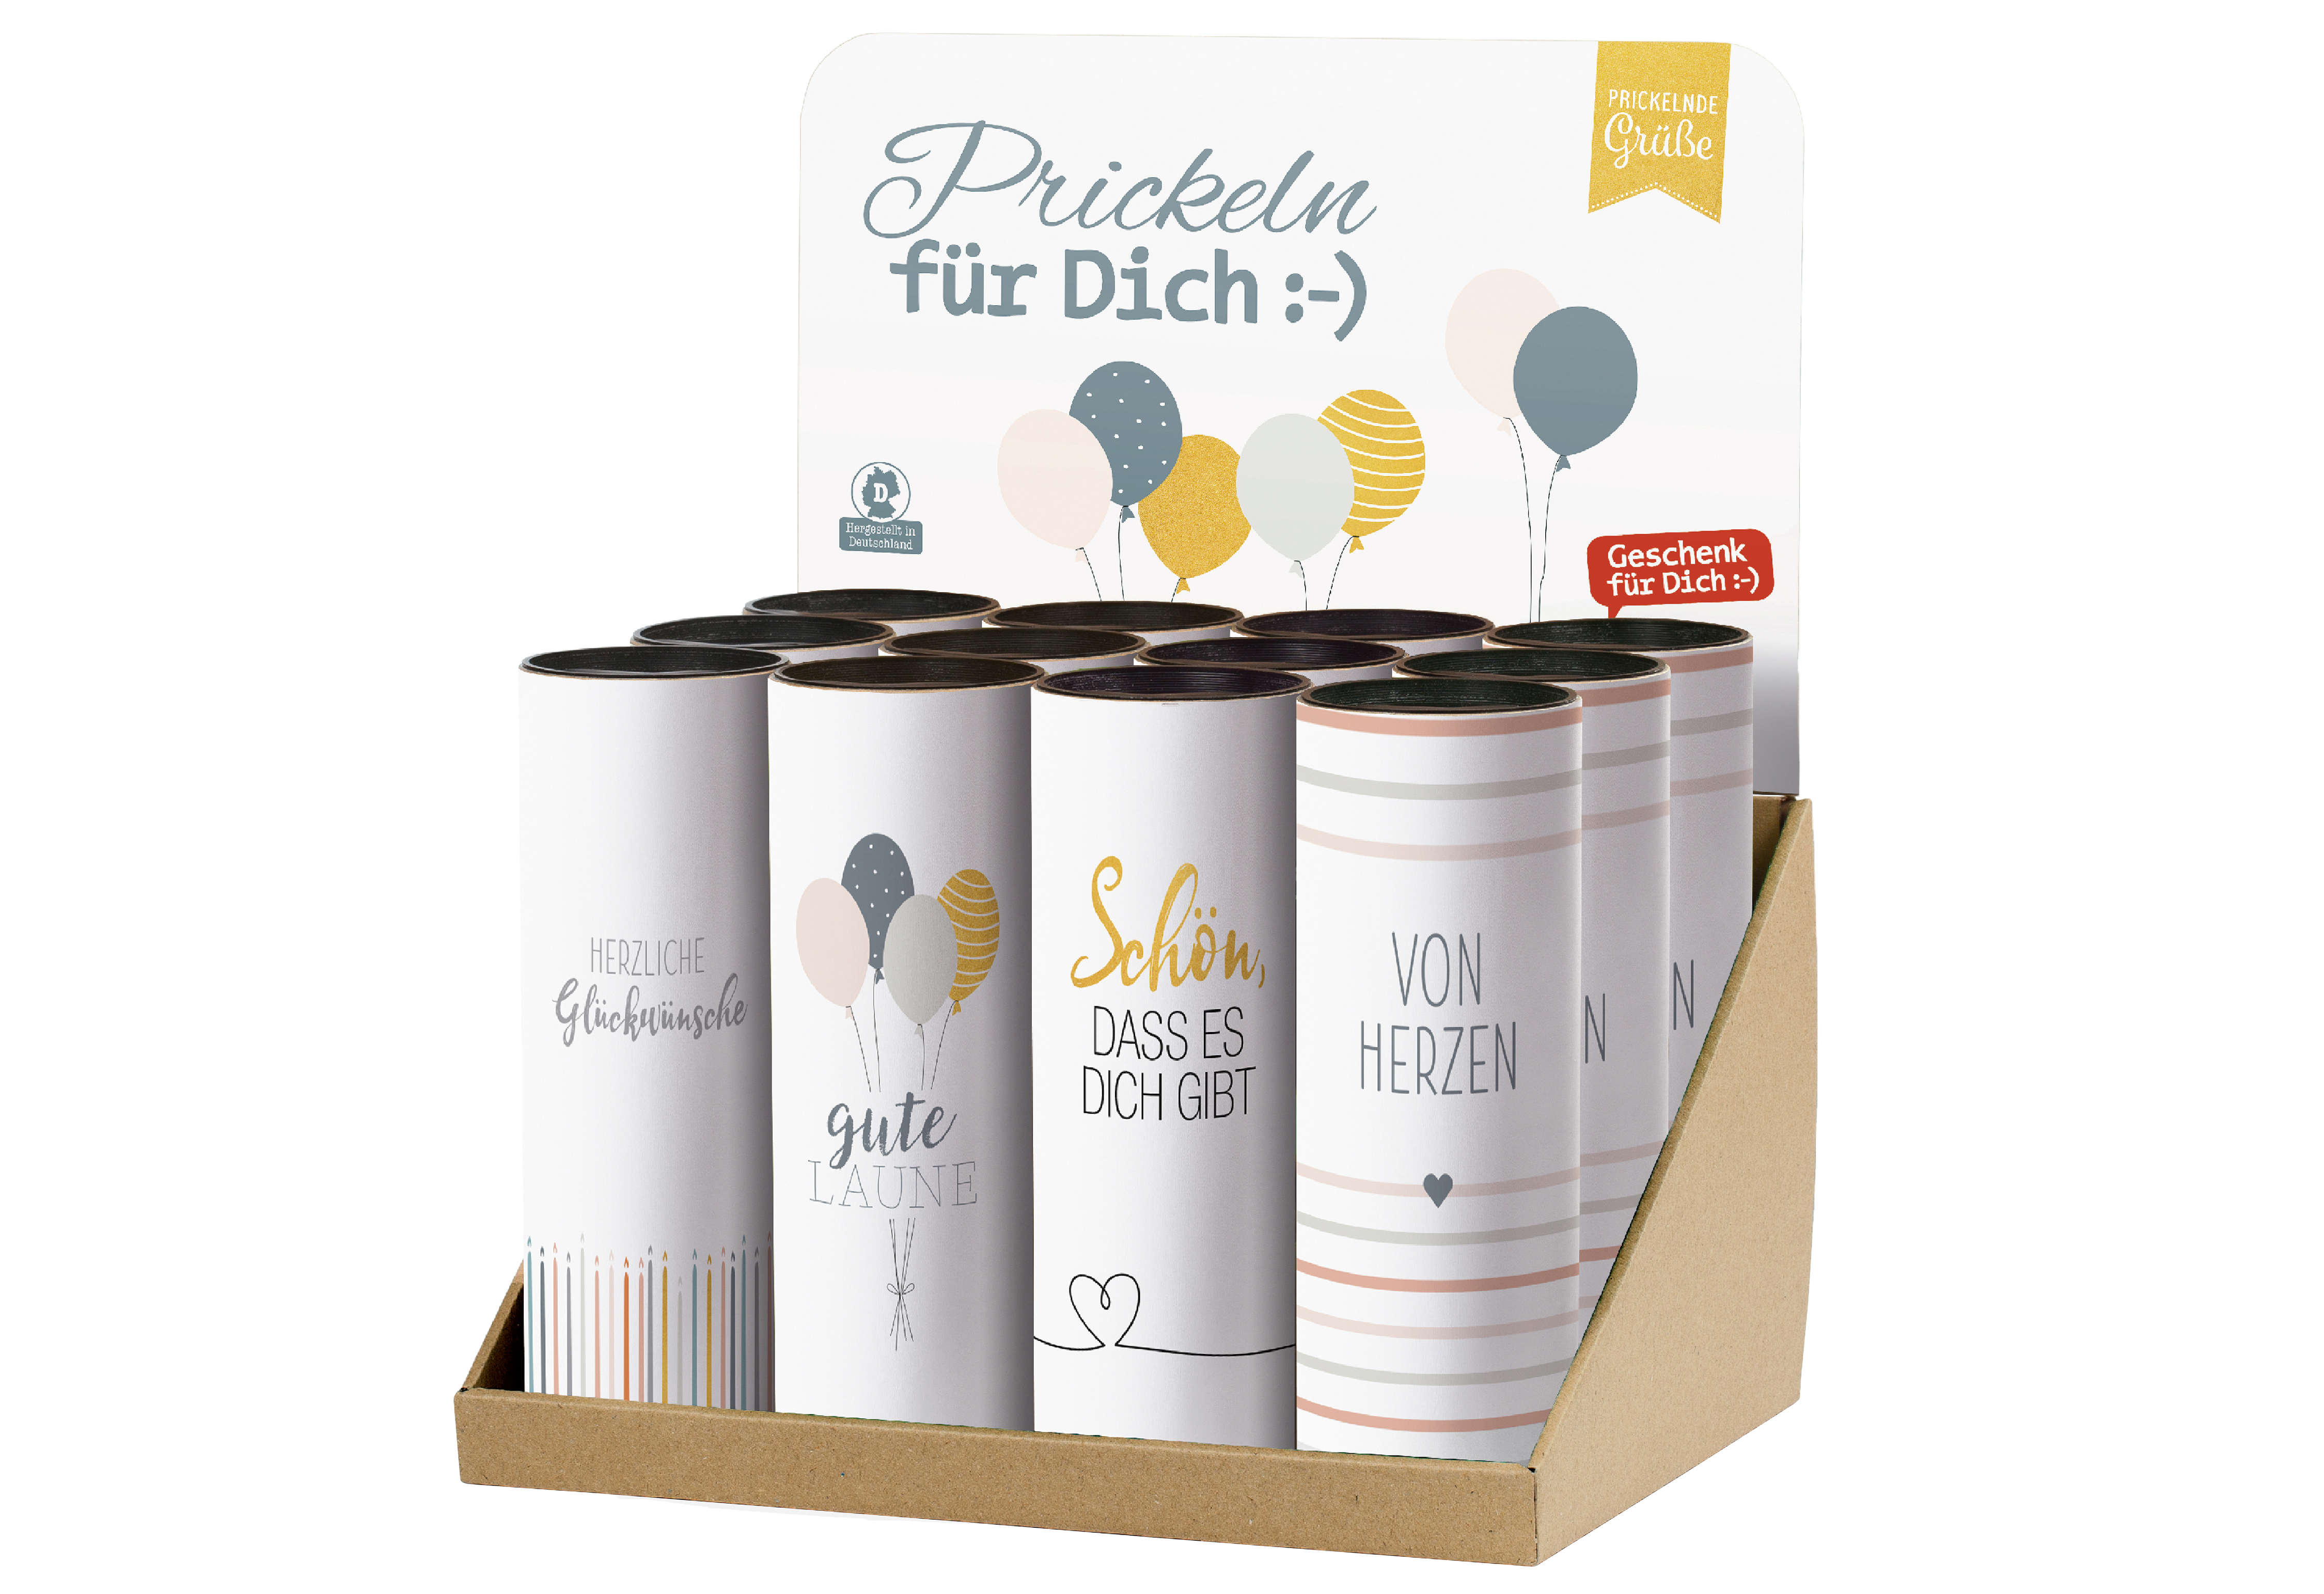 Deutscher Perlwein Prickeln für Dich 0,2l 12Flaschen im Display